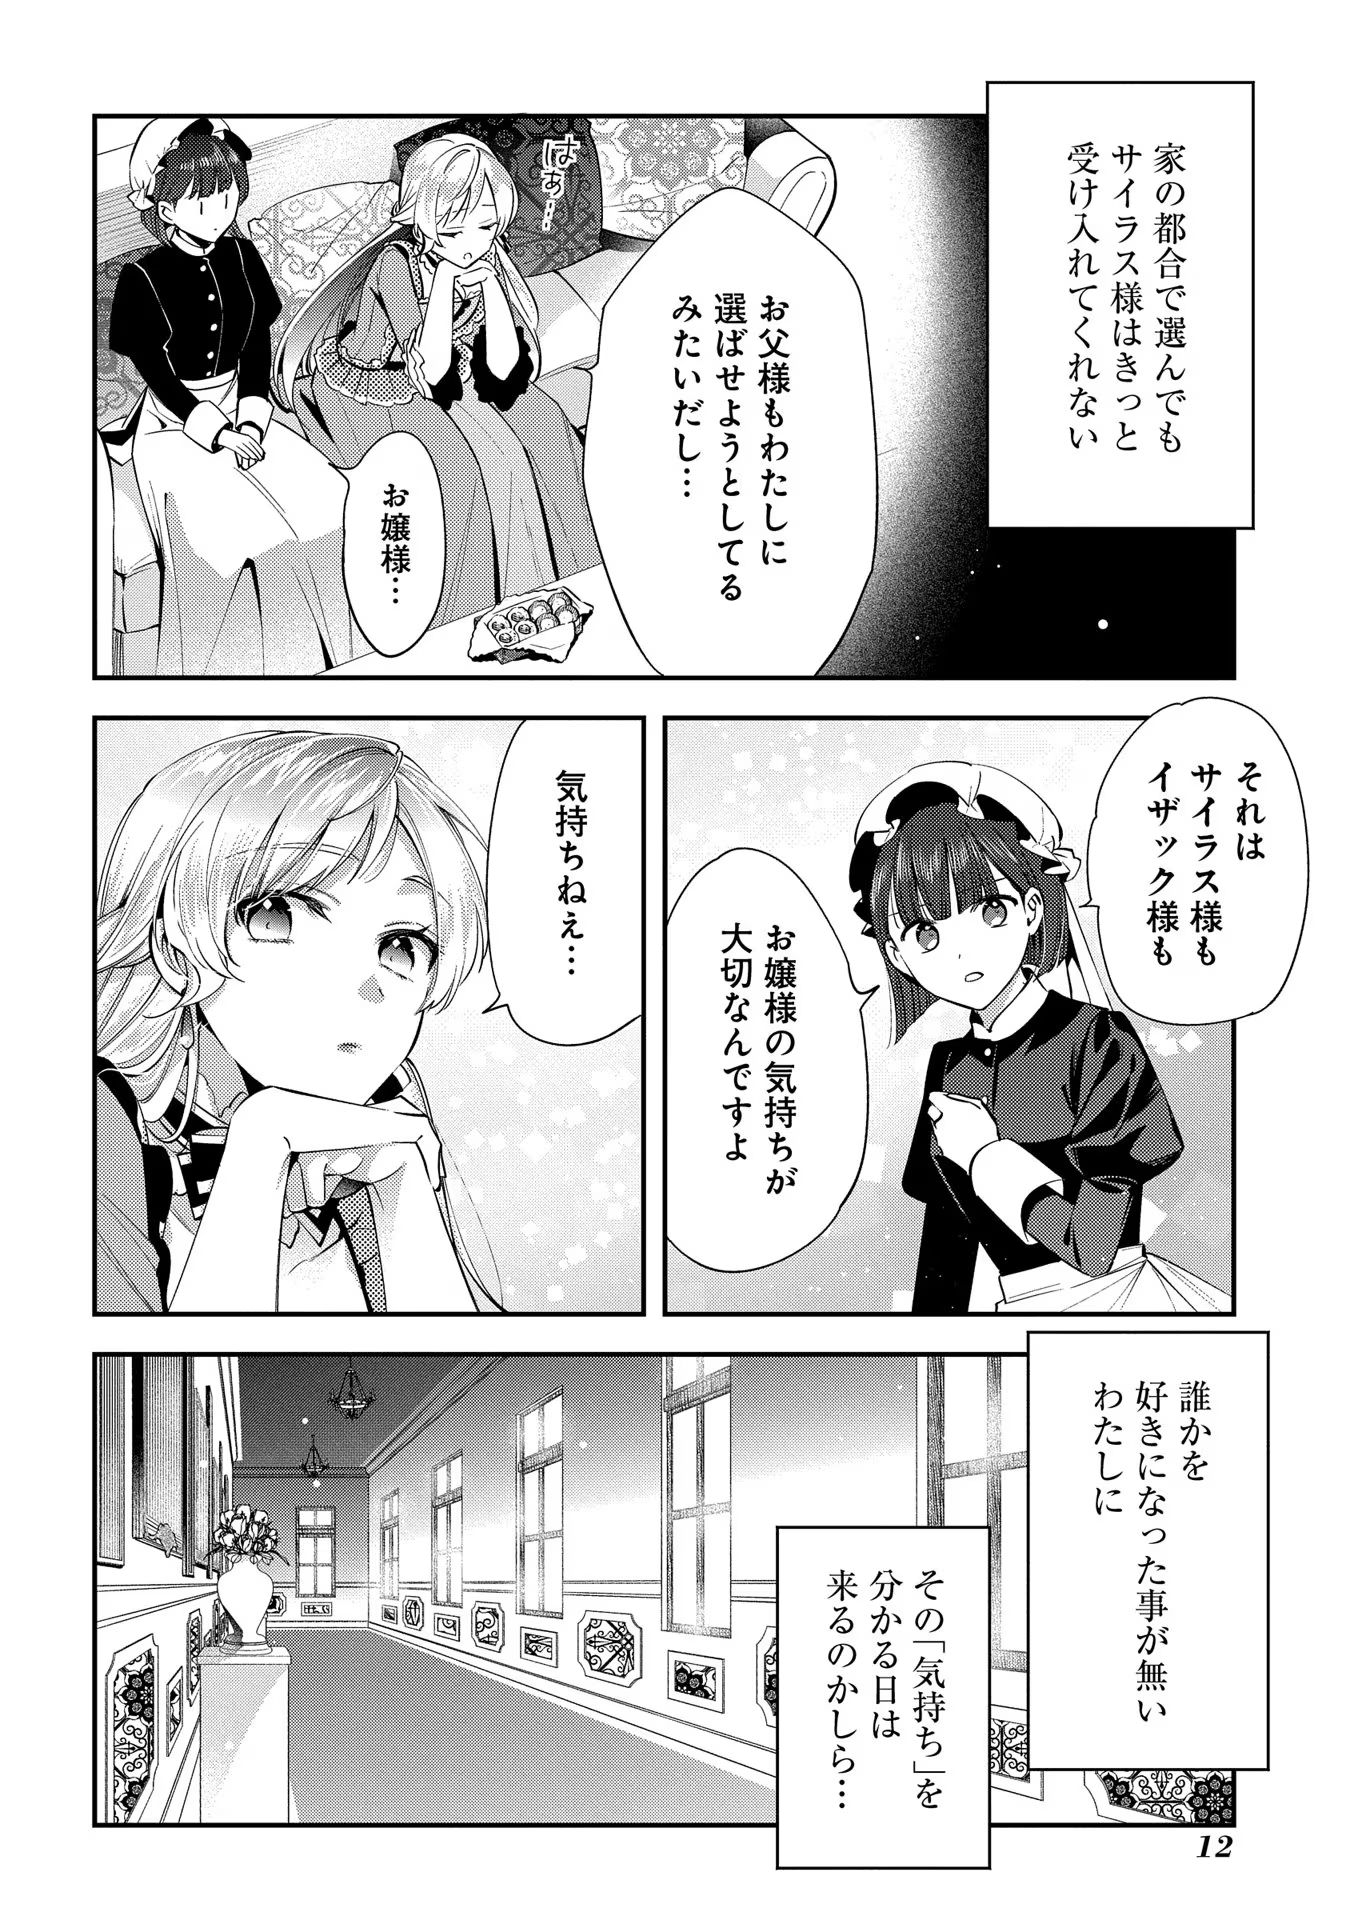 Outaishi ni Konyaku Hakisareta no de, Mou Baka no Furi wa Yameyou to Omoimasu - Chapter 6 - Page 11